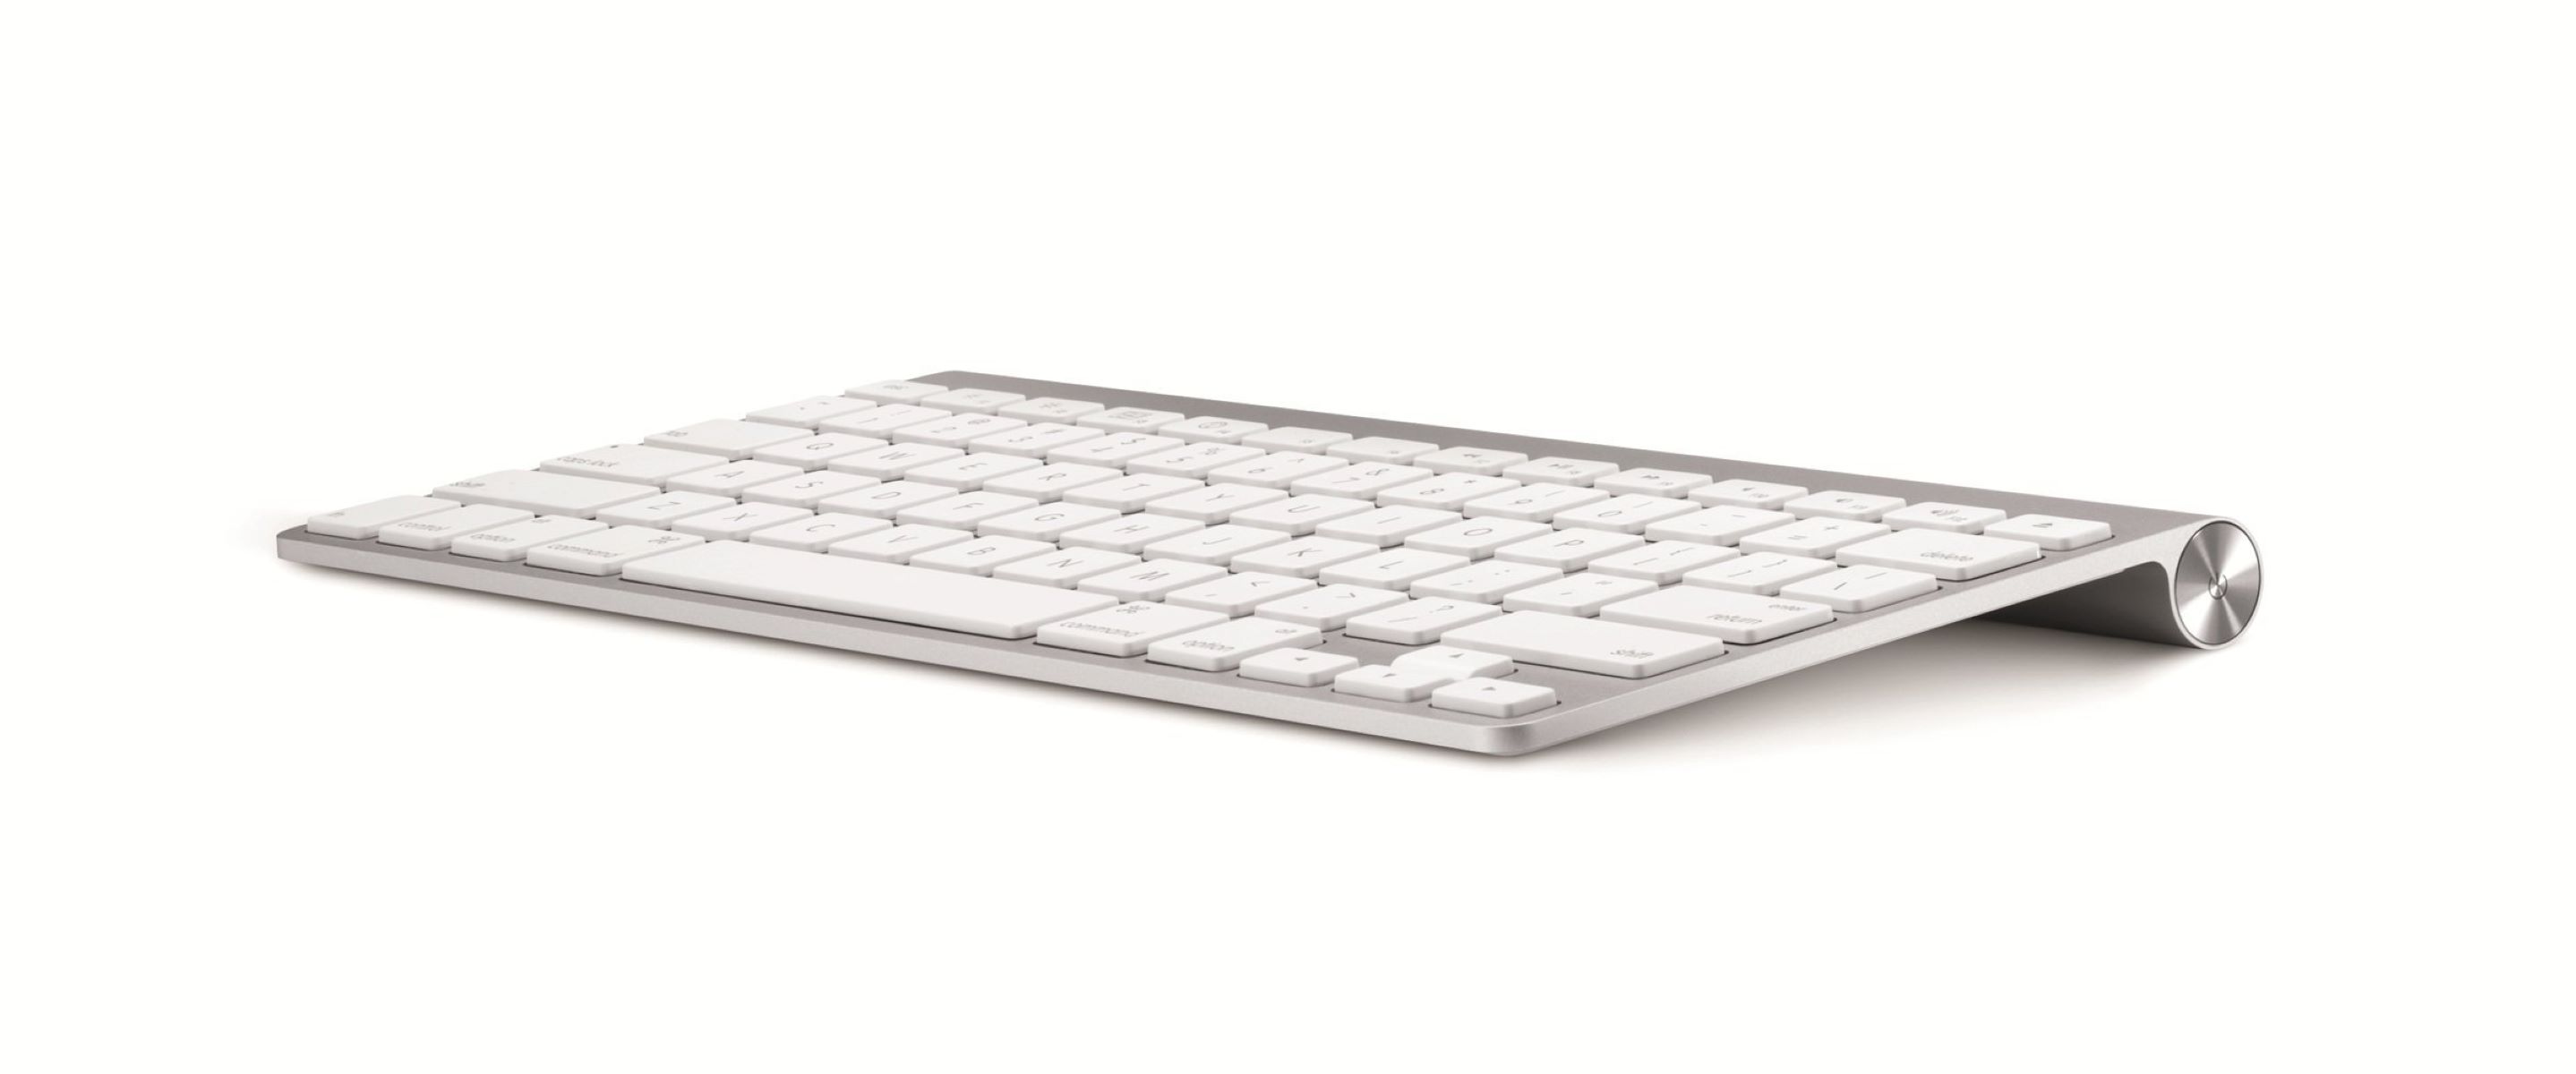 11-best-apple-wireless-keyboard-for-2023